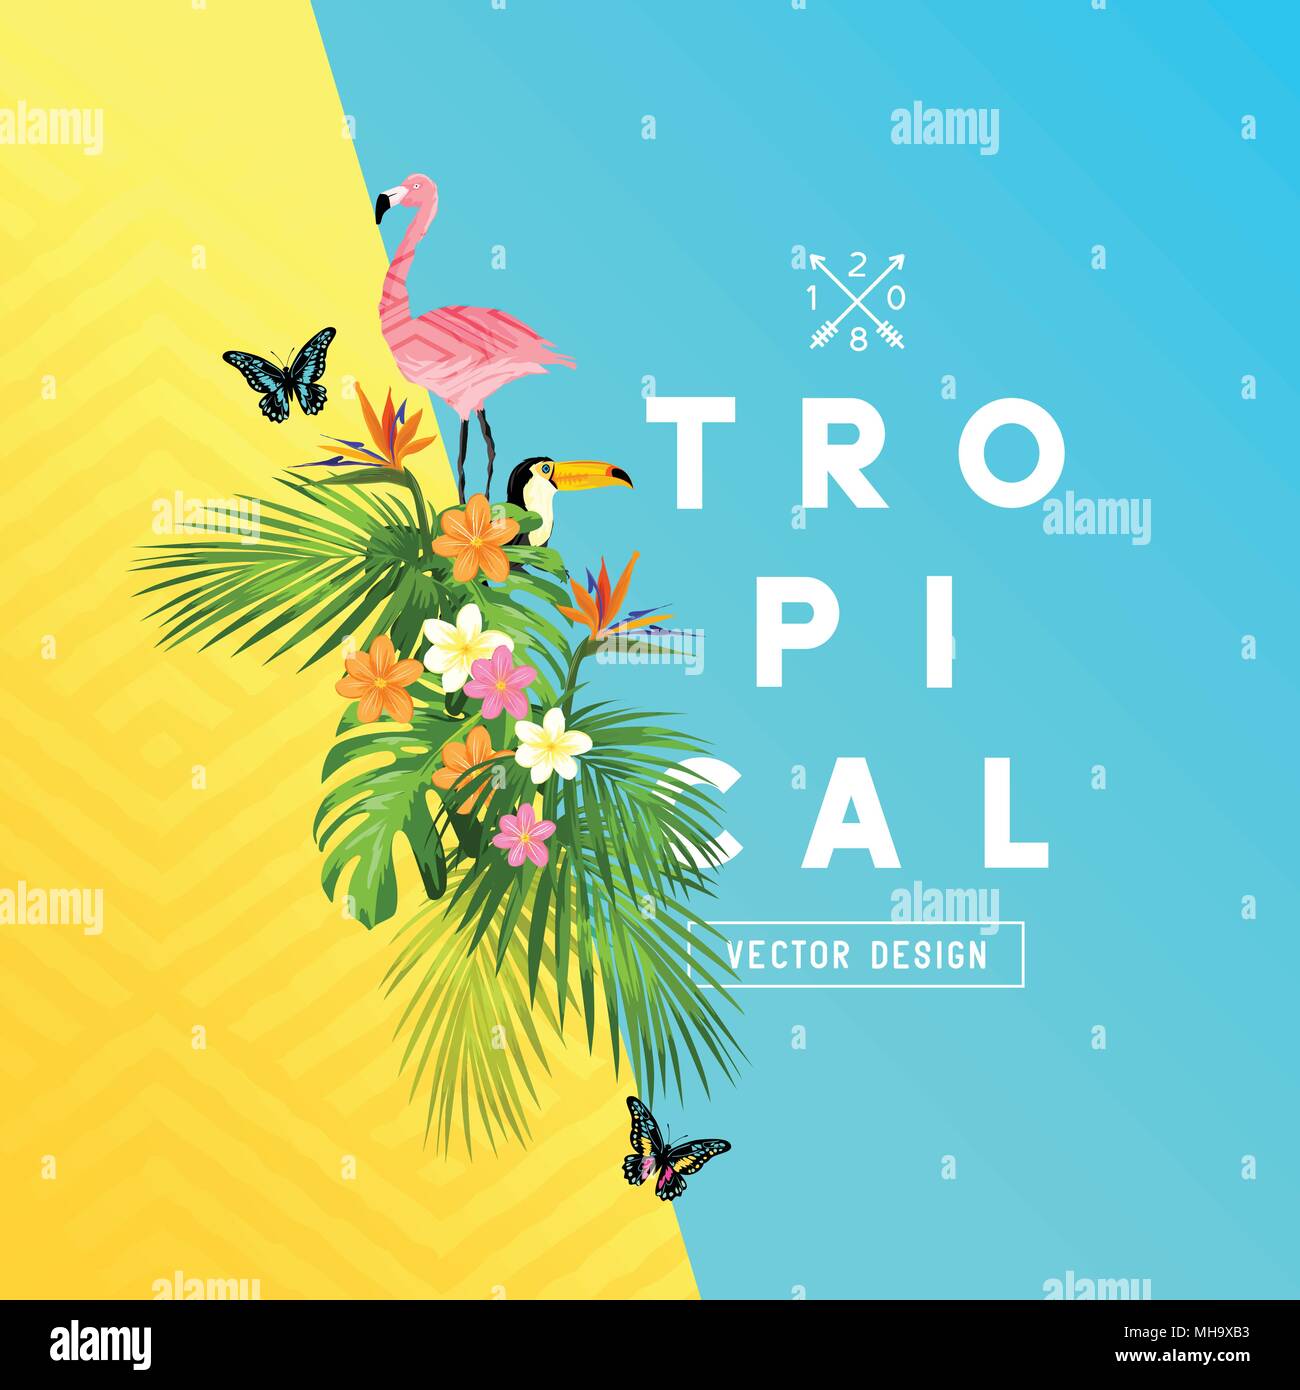 Tropischer Regenwald Sommer Design mit Palmenblättern, Plumerias, und tropische Vögel. Vector Illustration. Stock Vektor